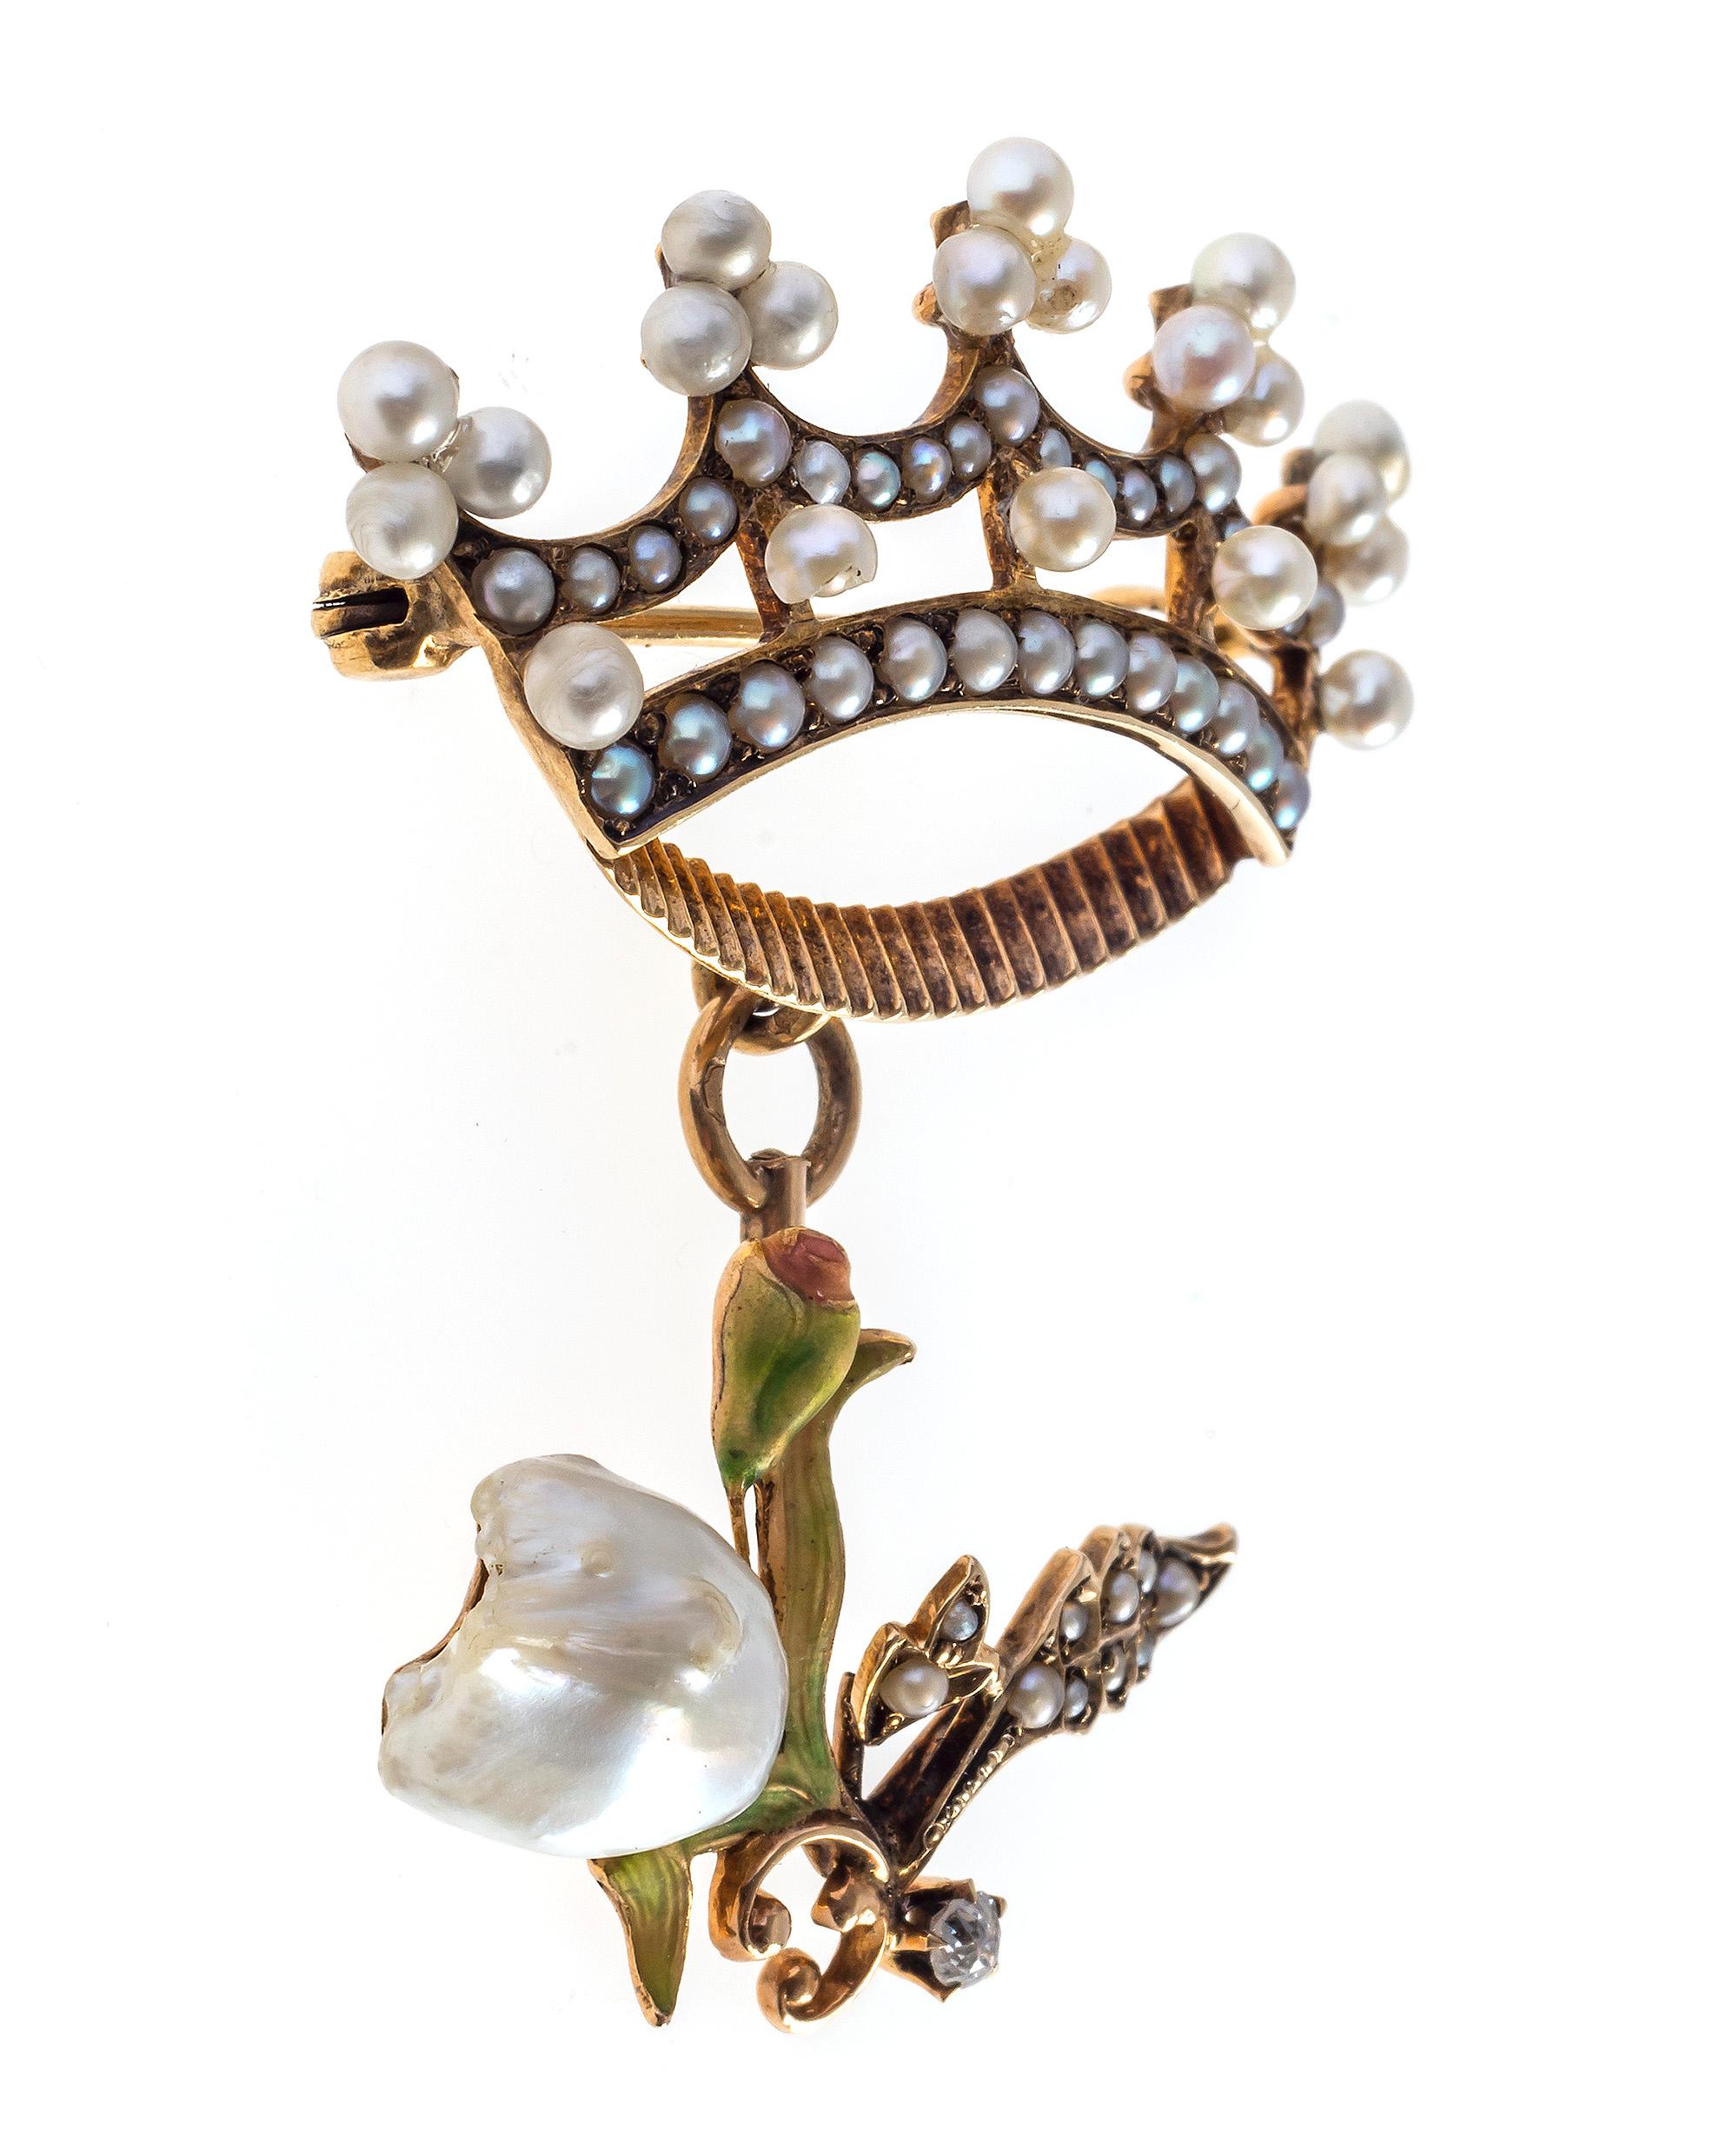 Eine mit feinen orientalischen Perlen besetzte Krone ist als Brosche montiert, an der eine fein modellierte Tulpe hängt. Eine natürliche Barockperle, die den Kopf der Tulpe darstellt, ist von feinen Blättern und einer Blütenknospe umgeben, die mit